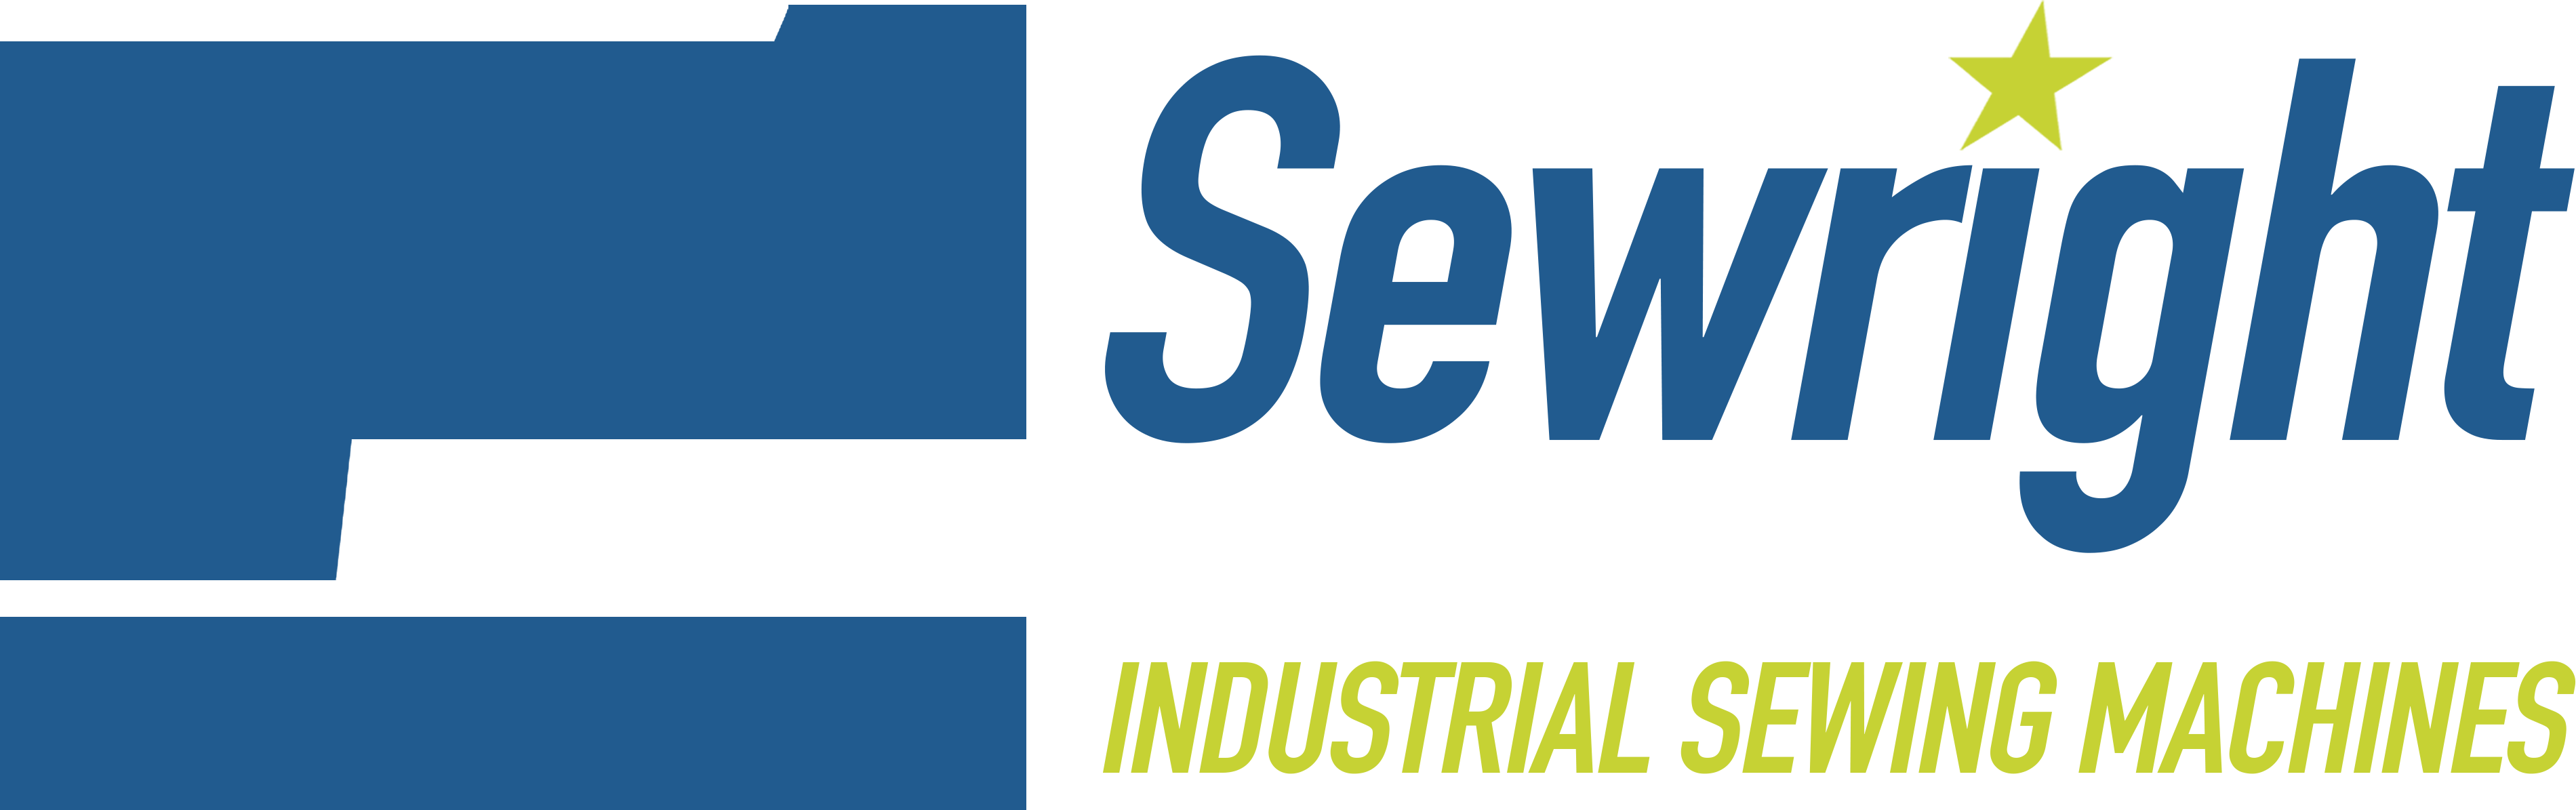 sewrightsew logo